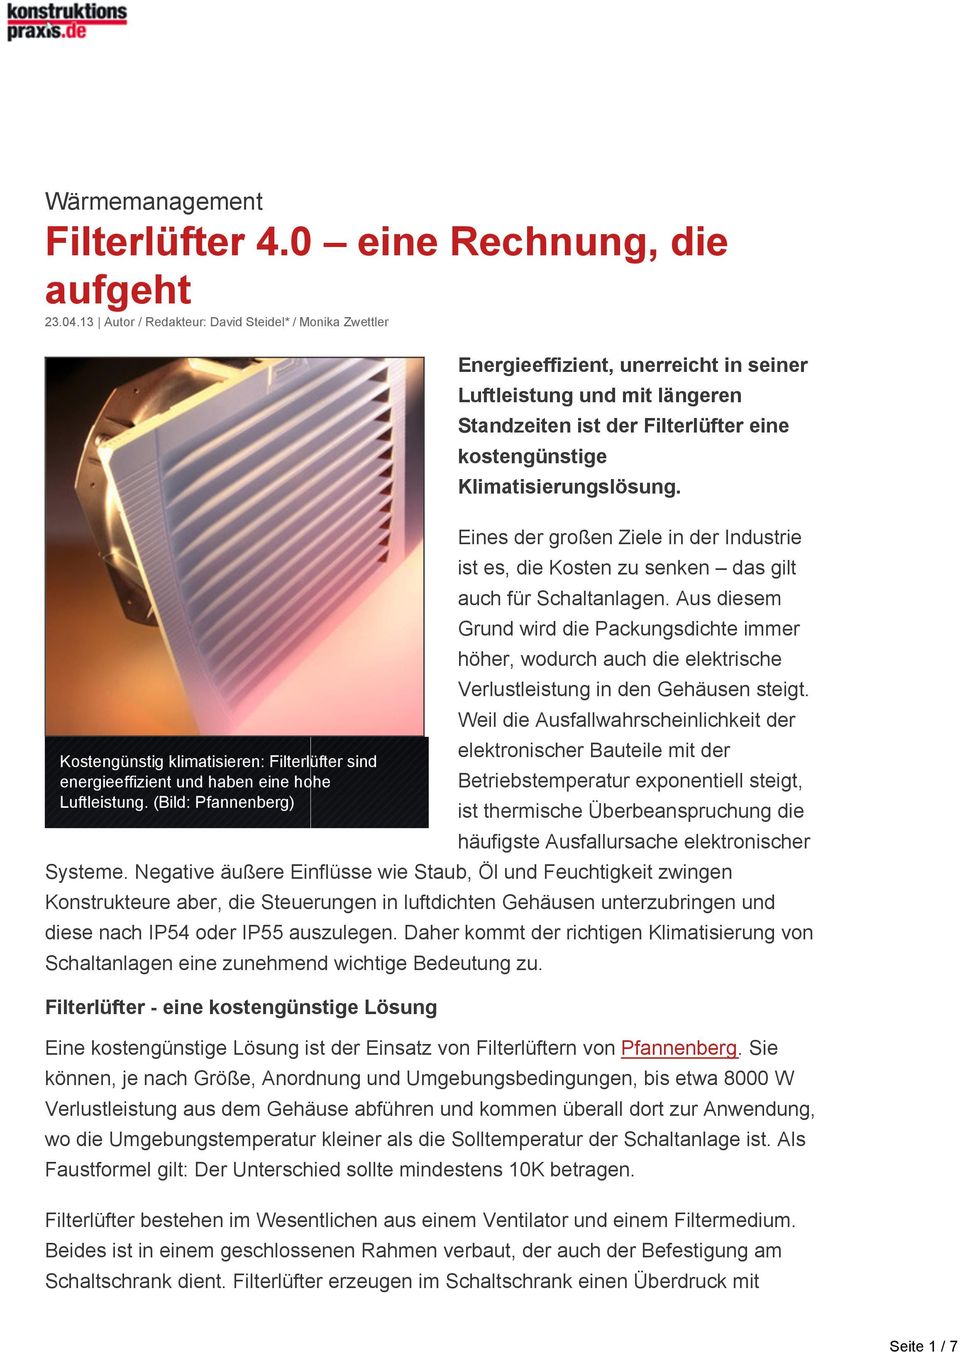 (Bild: Pfannenberg) Energieeffizient, unerreicht in seiner Luftleistung und mit längeren Standzeiten ist der Filterlüfter eine kostengünstige Klimatisierungslösung.